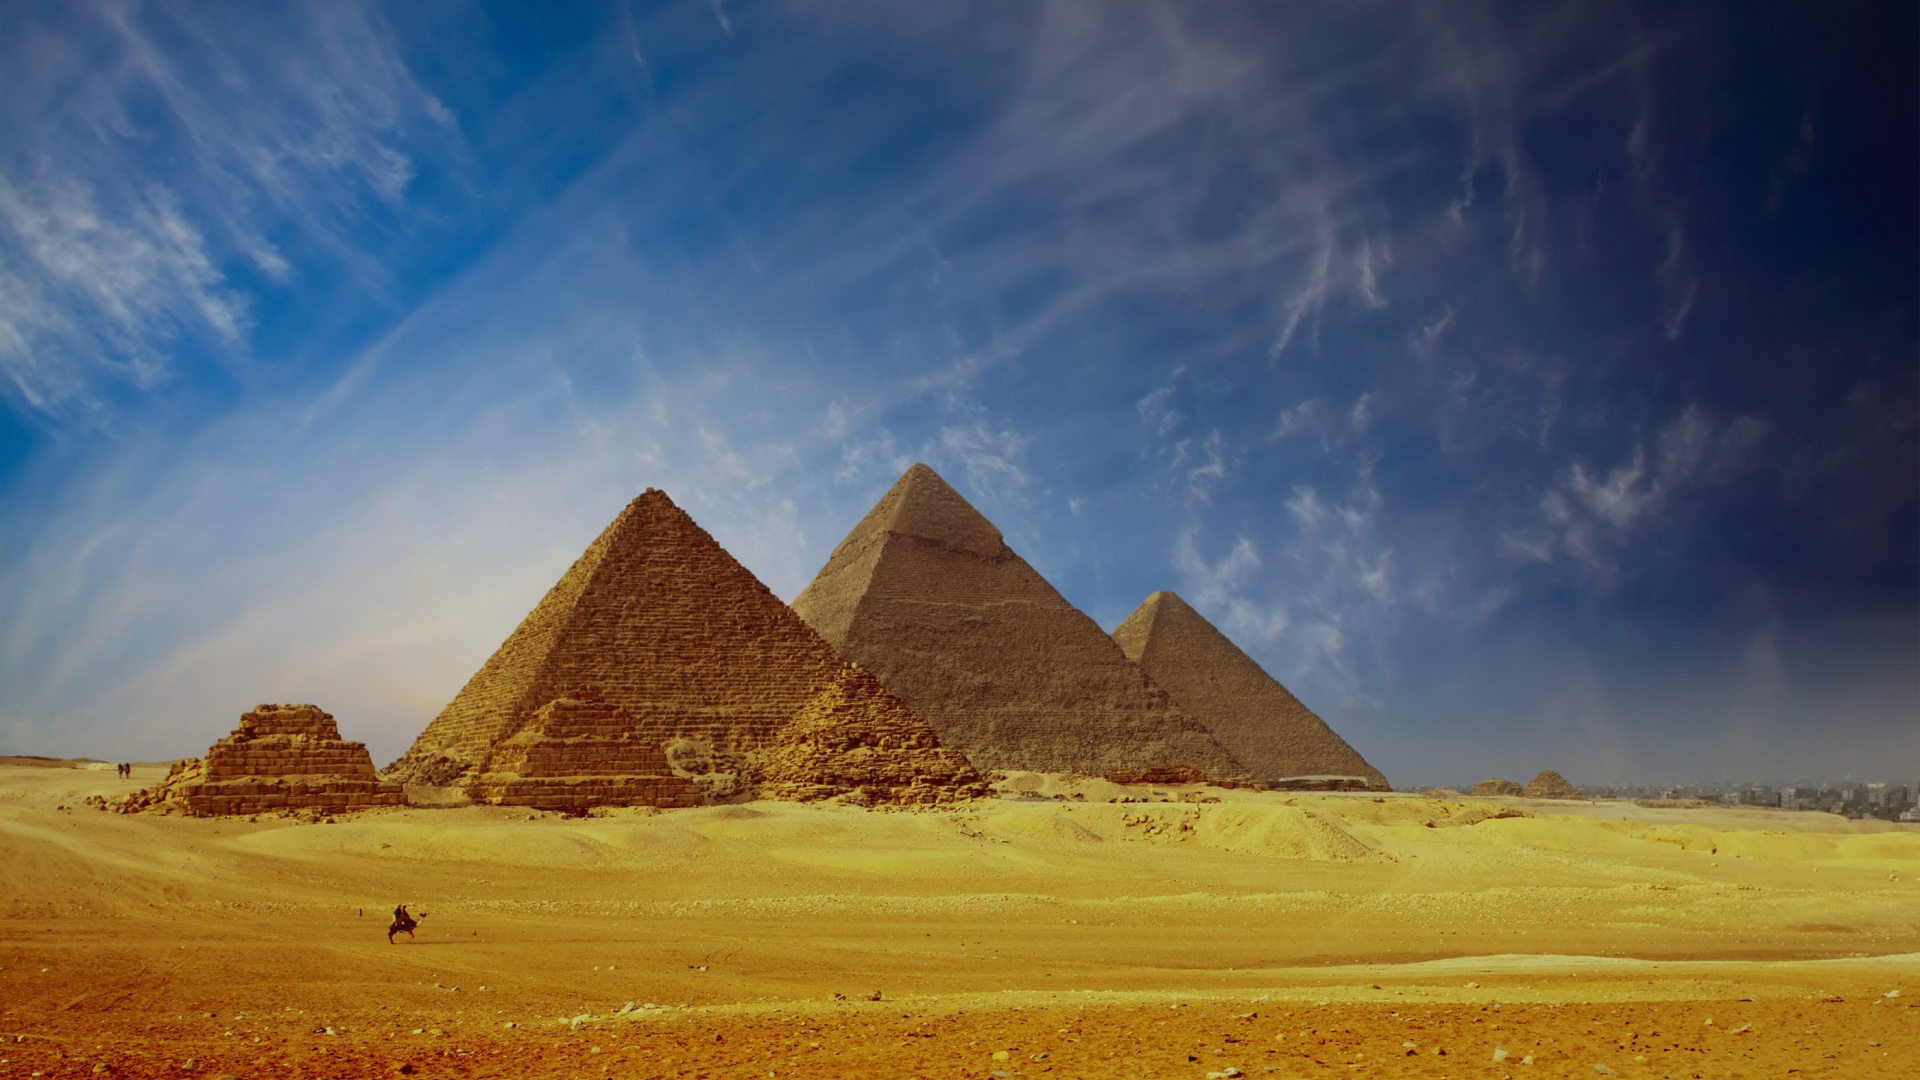 fond d'écran pyramide hd,pyramide,monument,histoire ancienne,patrimoine mondial de l'unesco,ciel